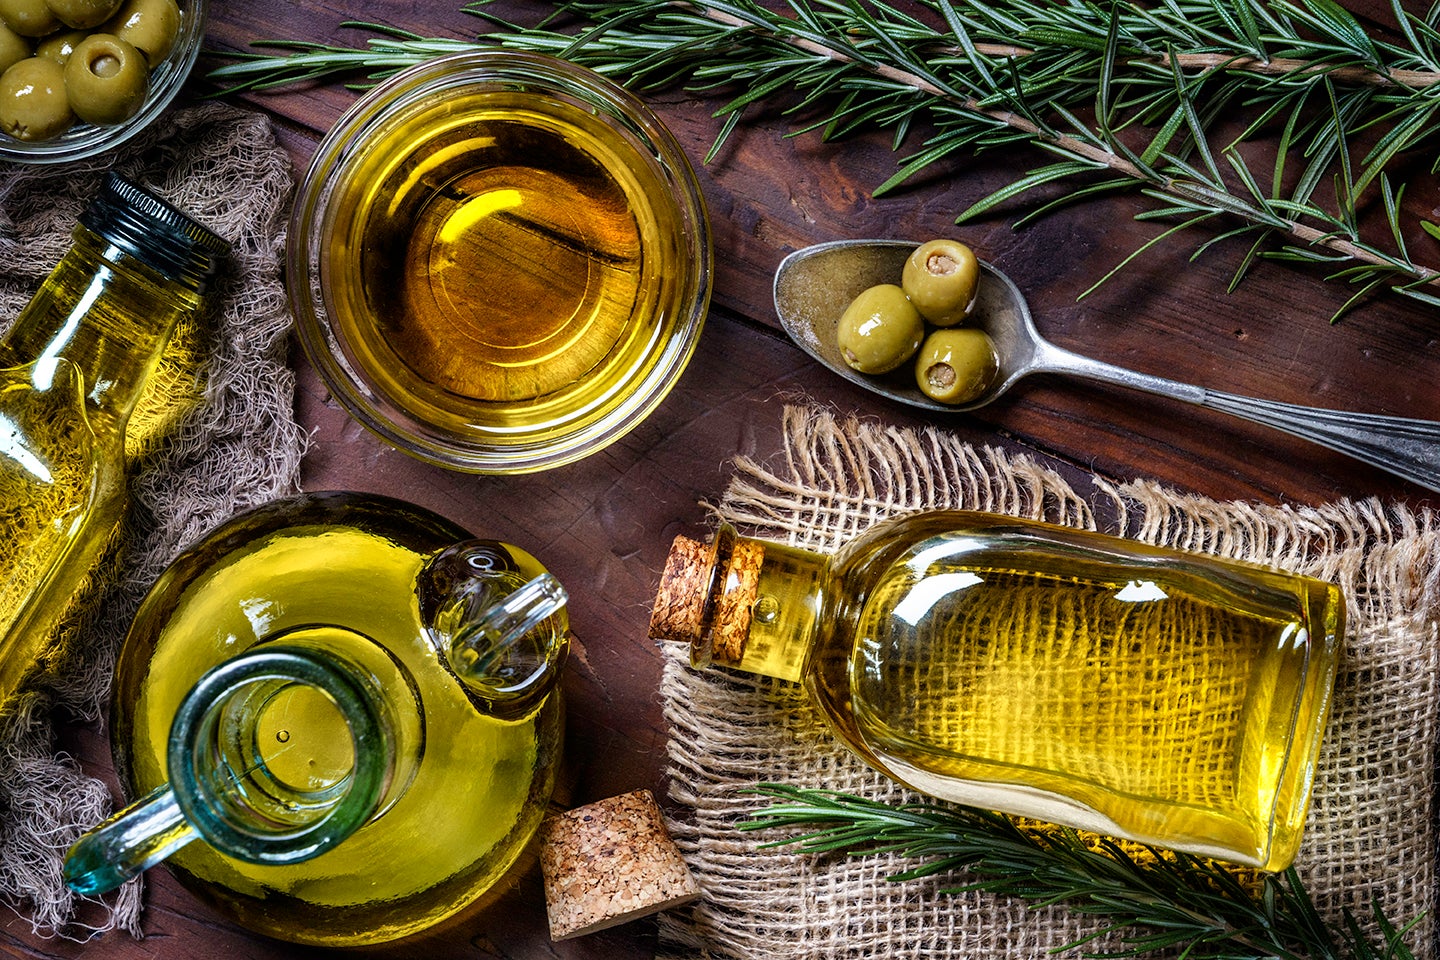 olives and olive oil bottles